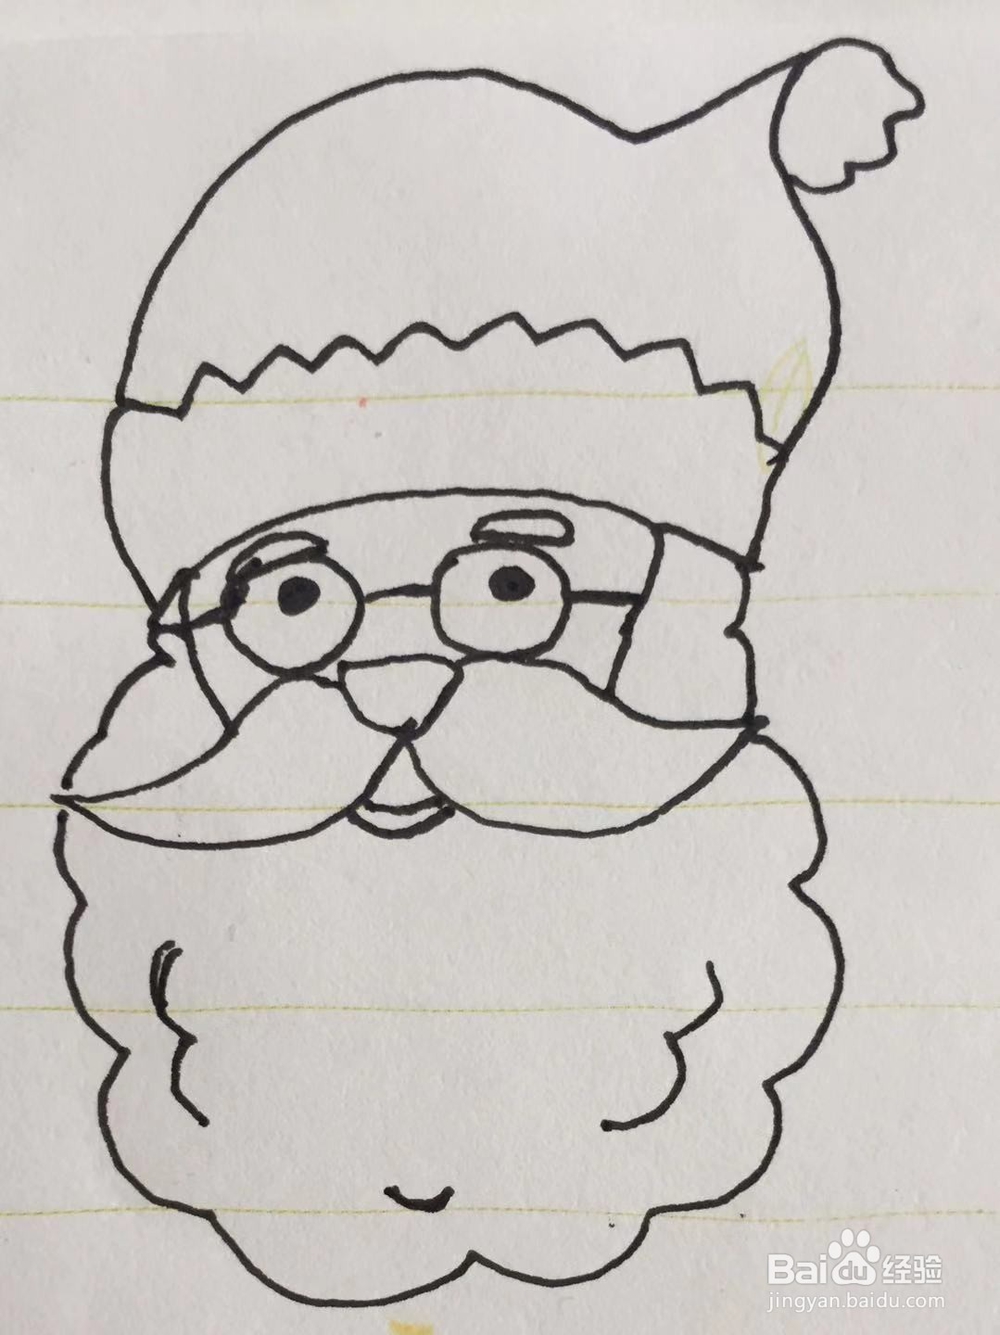 我们用笔画出圣诞老人的眉毛,眼睛,鼻子,胡须和嘴巴